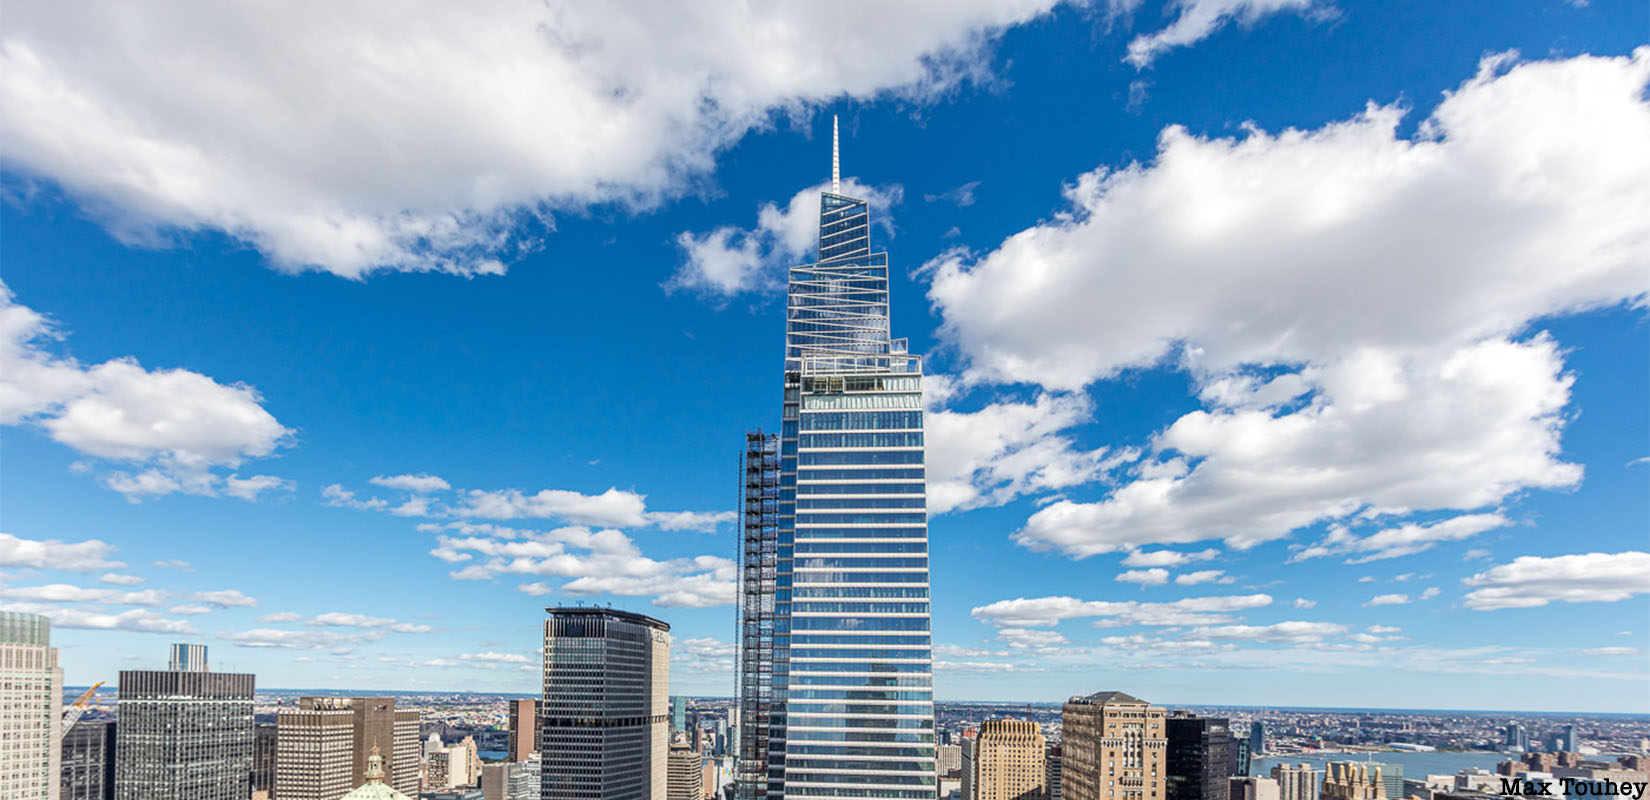 Un rascacielos con ADN Bierzo elegido entre los más espectaculares del mundo 2